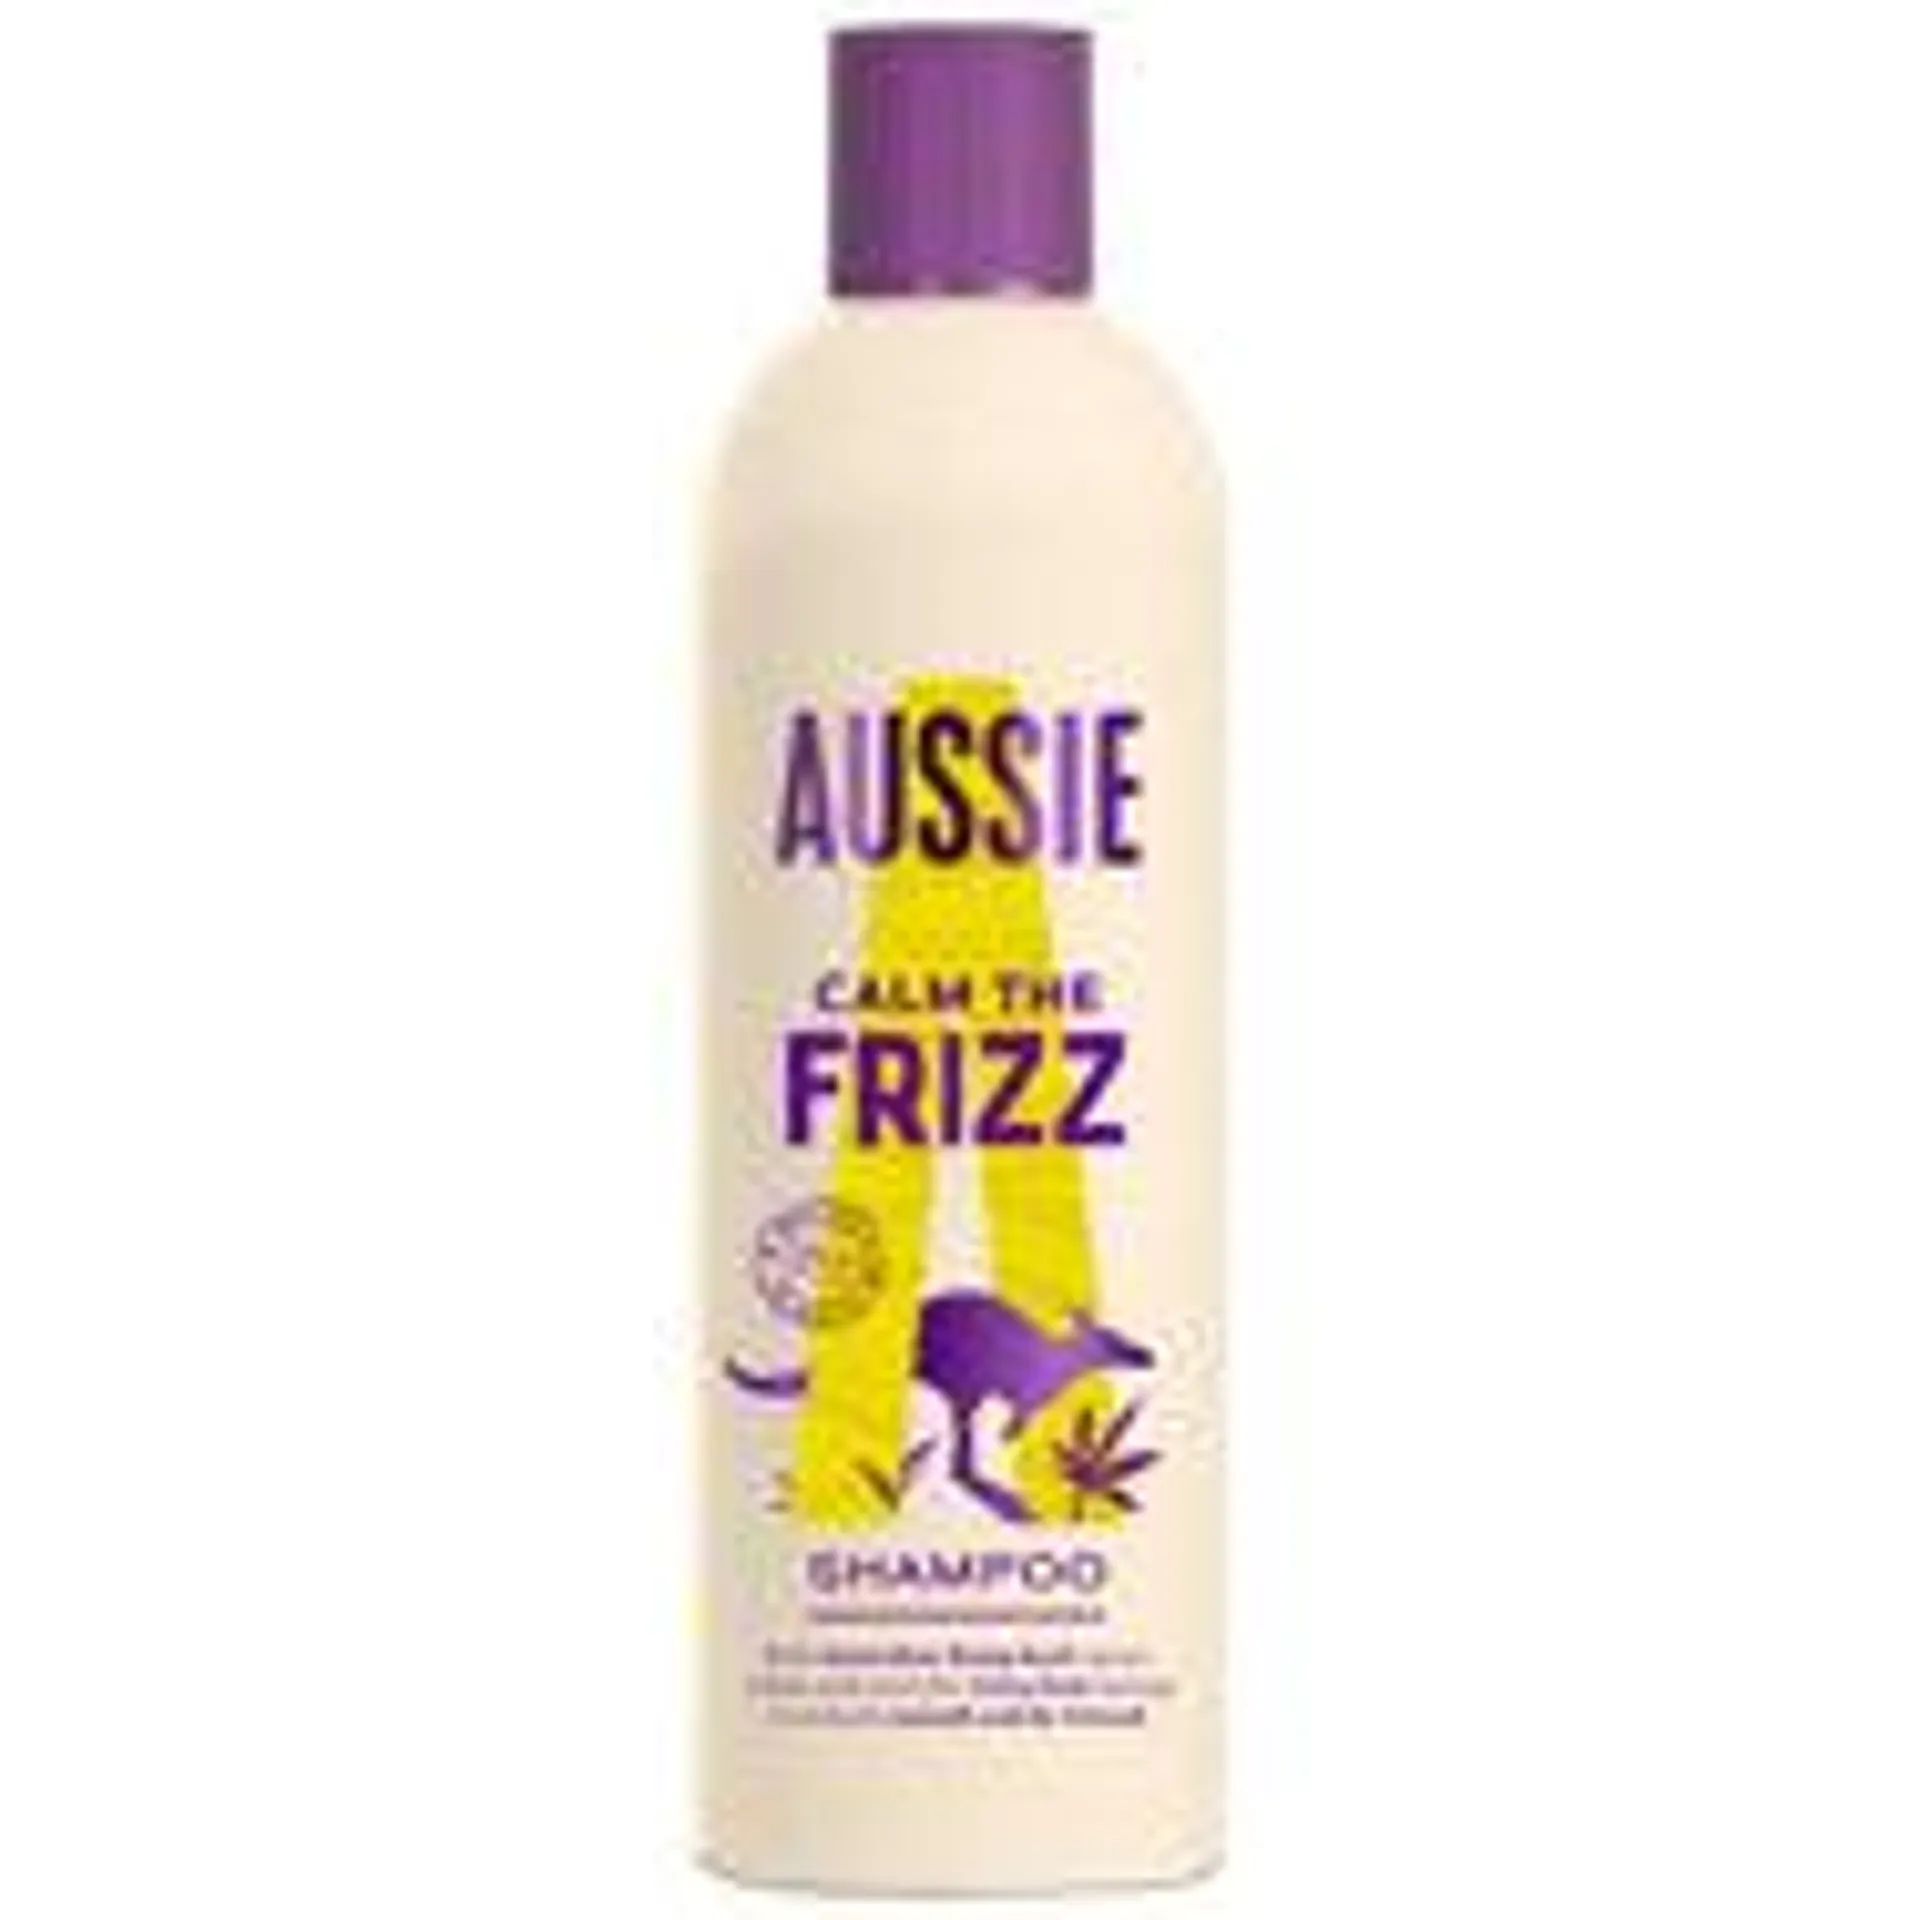 Aussie Calm The Frizz Shampoo with Hemp Seed